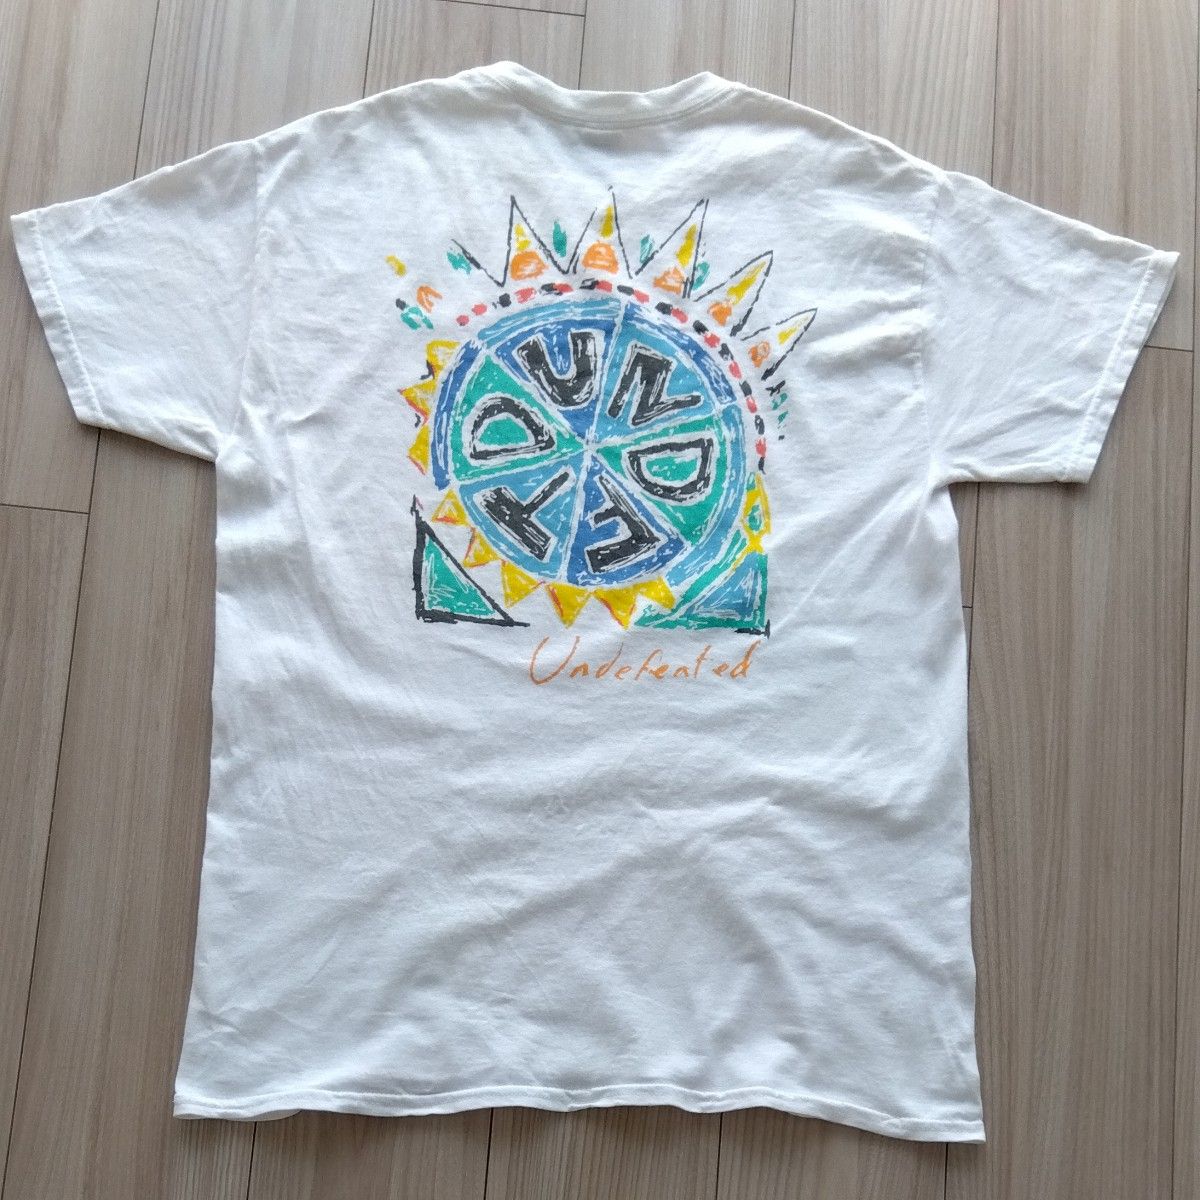 UNDEFEATED (アンディフィーティド) 半袖 Tシャツ / サイズM ホワイト